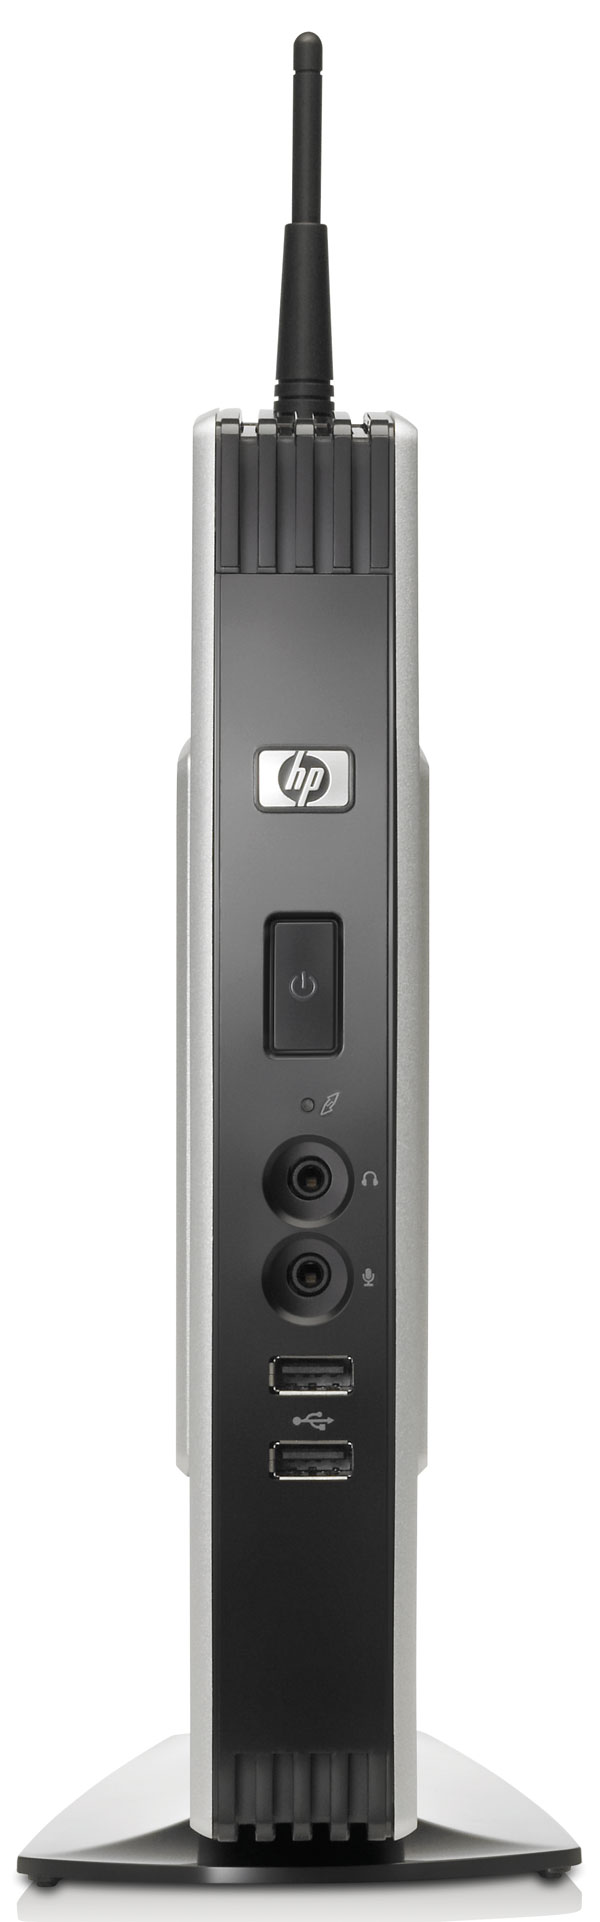 HP-t5740-Thin-Client-2